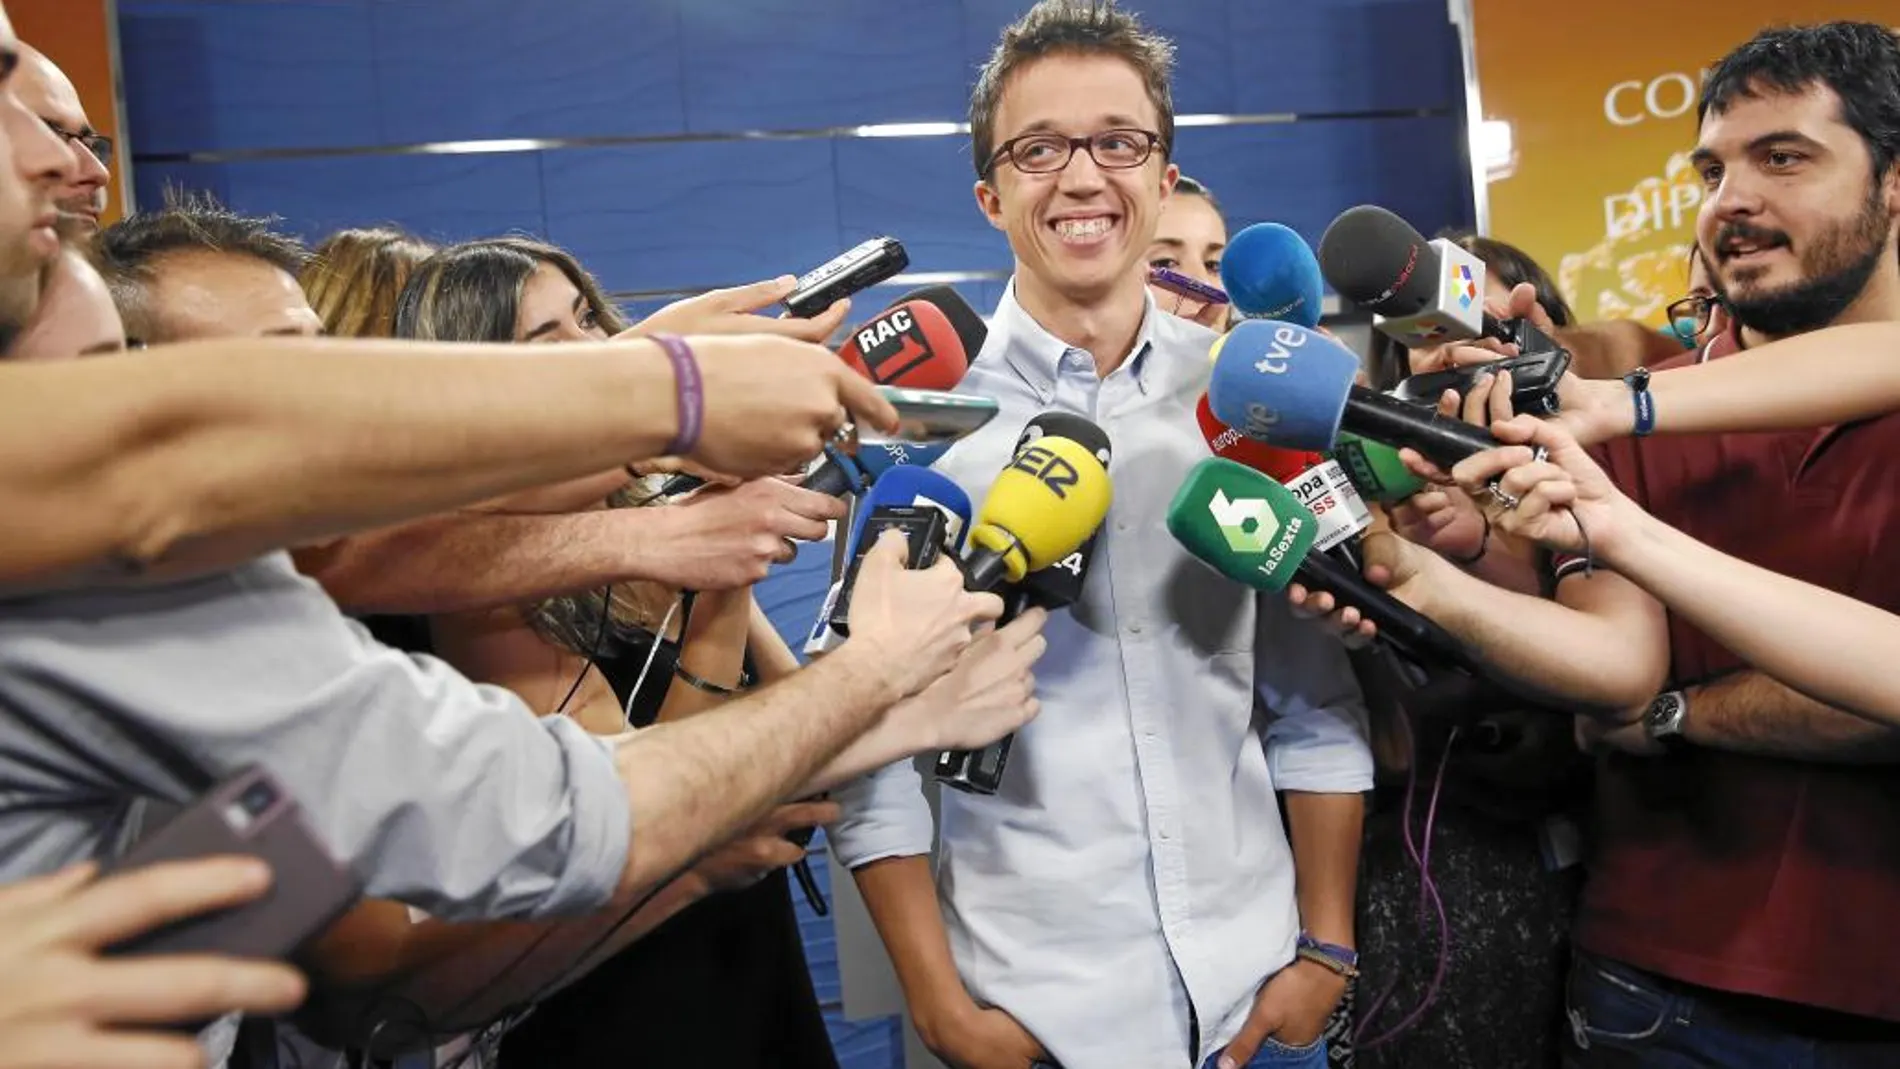 El secretario de Política de Podemos, Íñigo Errejón, atendió ayer a los medios en el Congreso de los Diputados